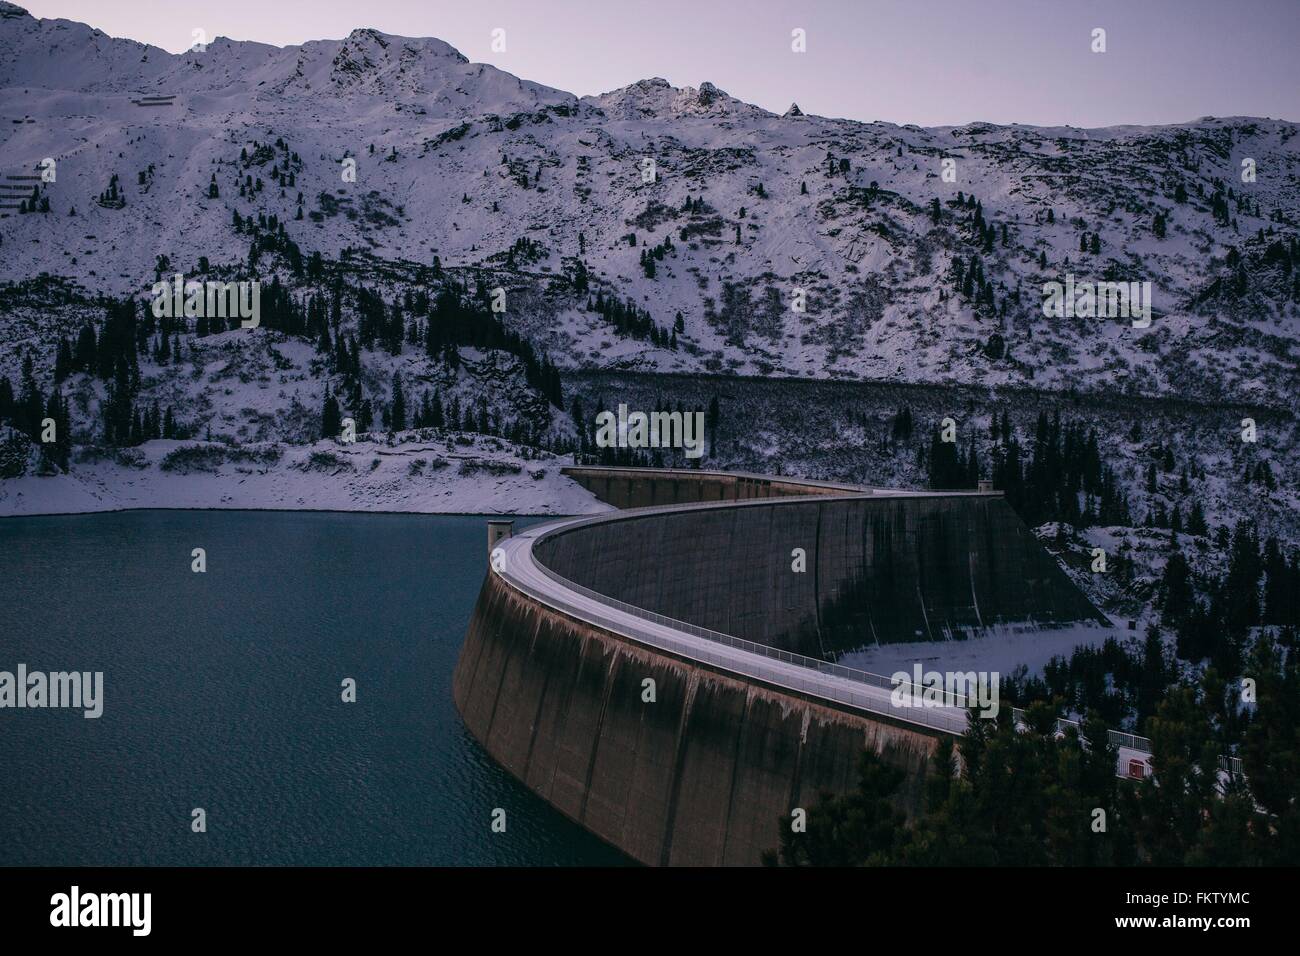 Kops barrage du réservoir et de montagnes couvertes de neige, soir, Galtur, Autriche Banque D'Images